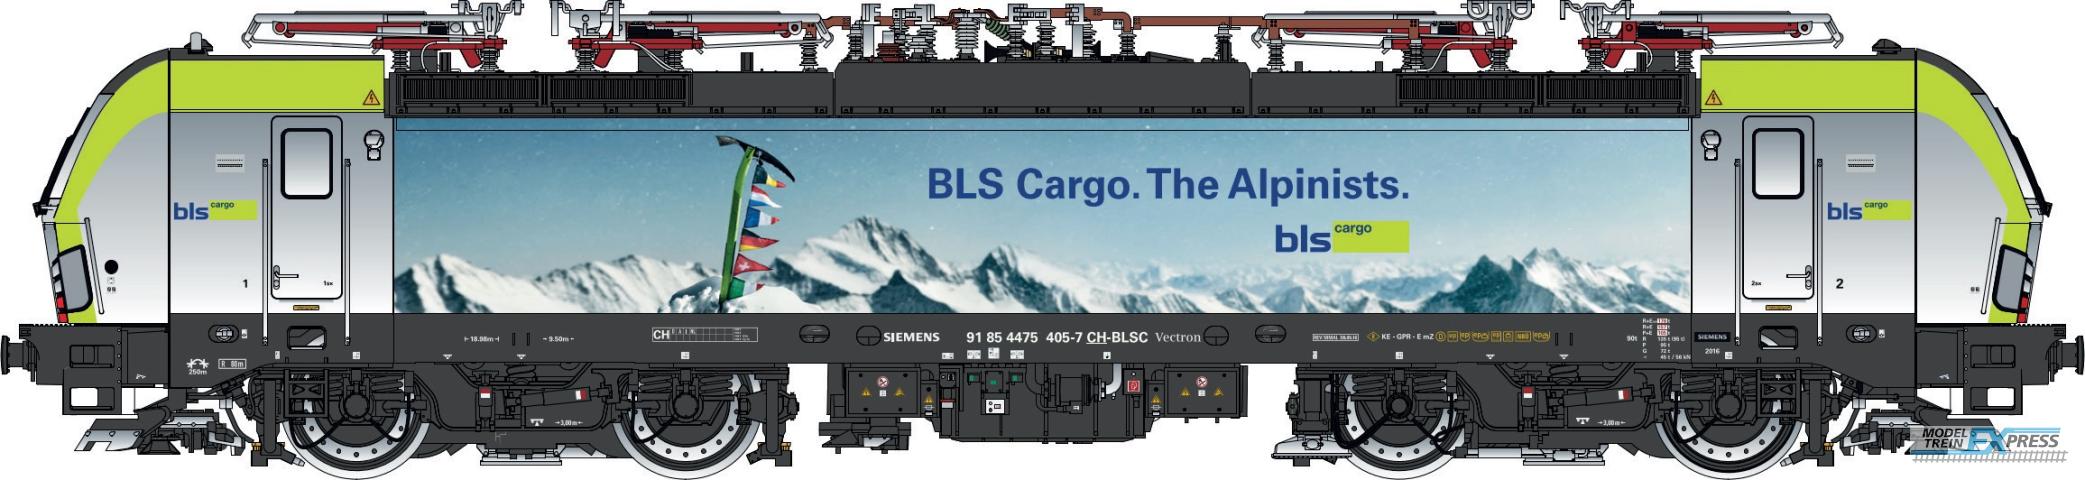 LS Models 17615S BLS Cargo Vectron MS, 91 85 4475 405-7 CH-BLSC, 4 pantographs,  /  Ep. VI  /  ---  /  HO  /  AC SOUND  /  1 P.